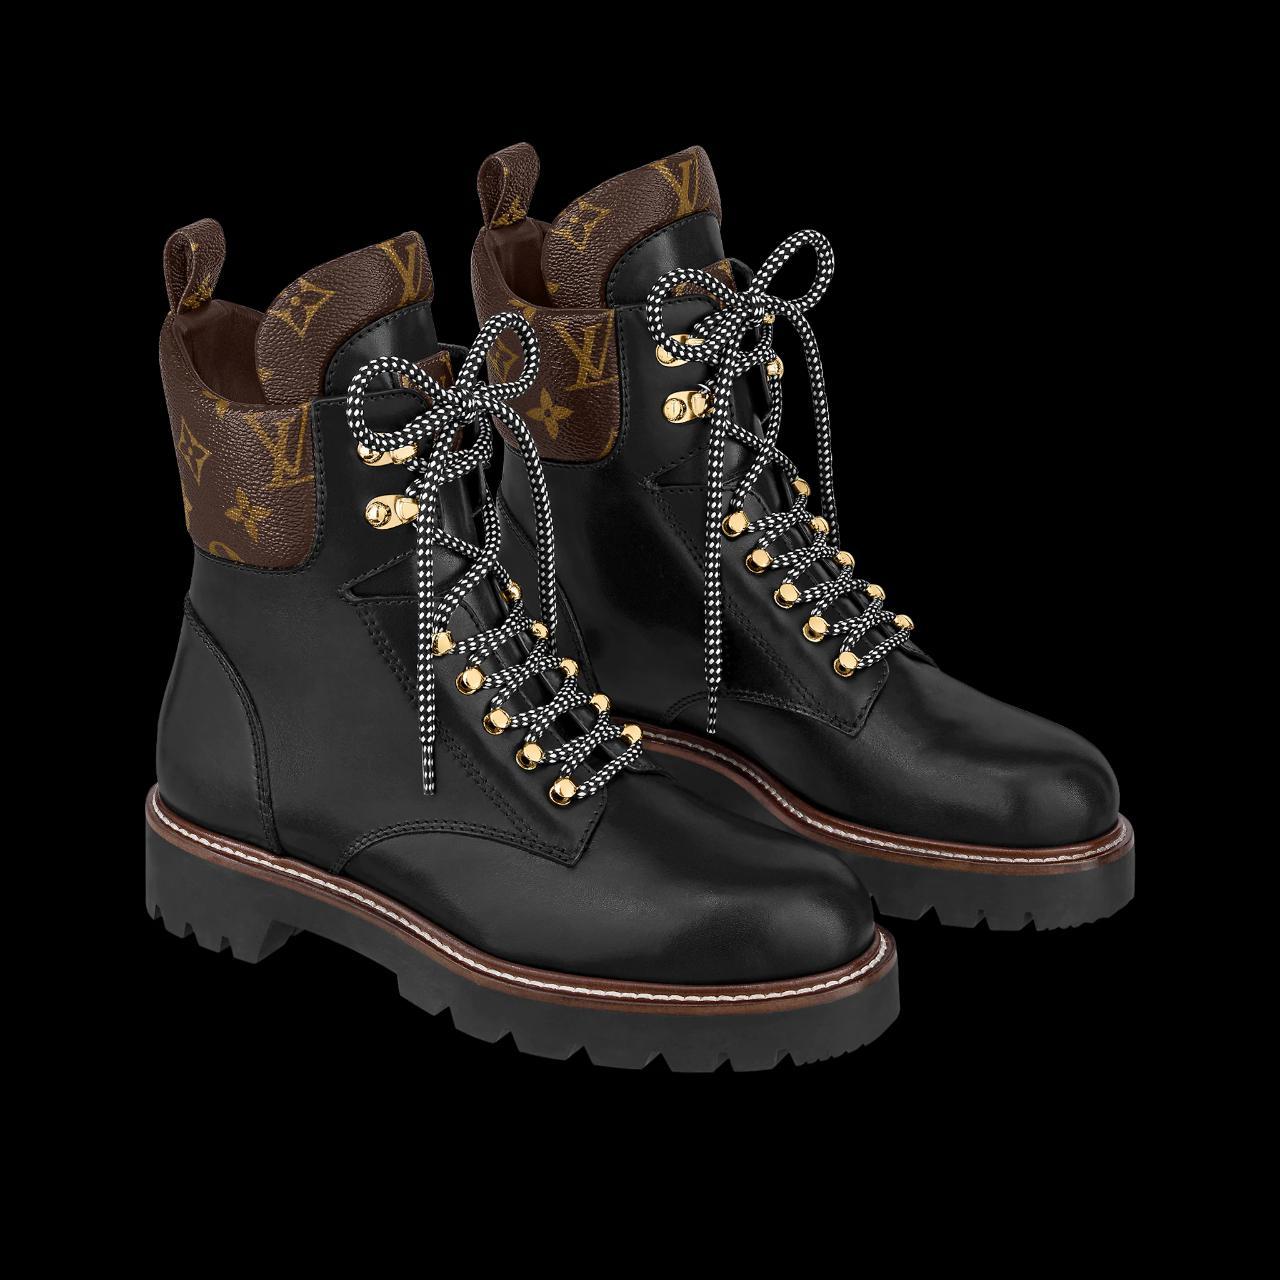 Louis Vuitton Territory Ranger Boots from 2022. - Depop